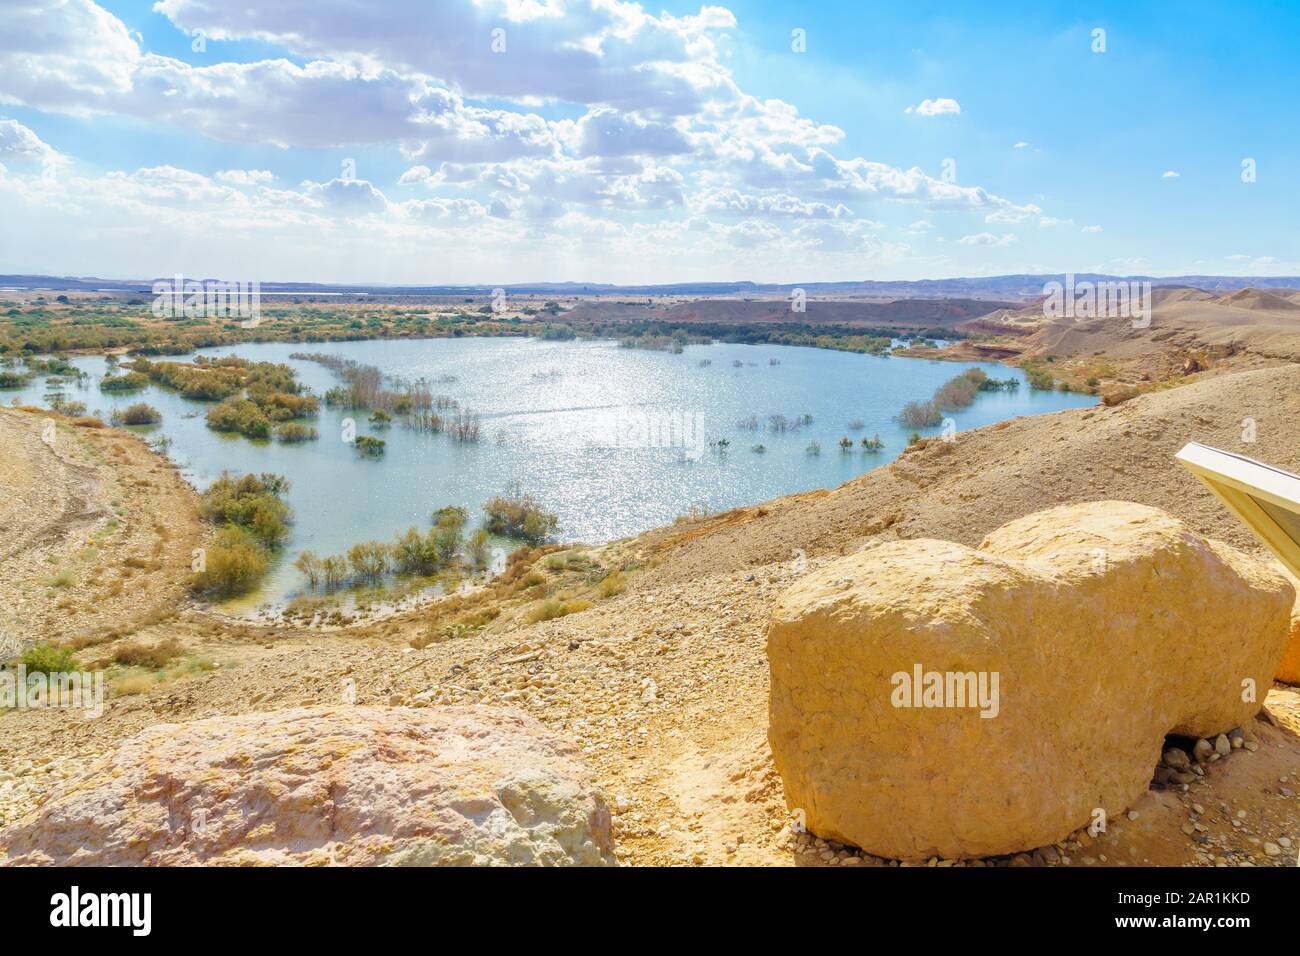 Bacino idrico e paesaggio desertico vicino a Ein Yahav, il deserto di Arava, Israele meridionale Foto Stock